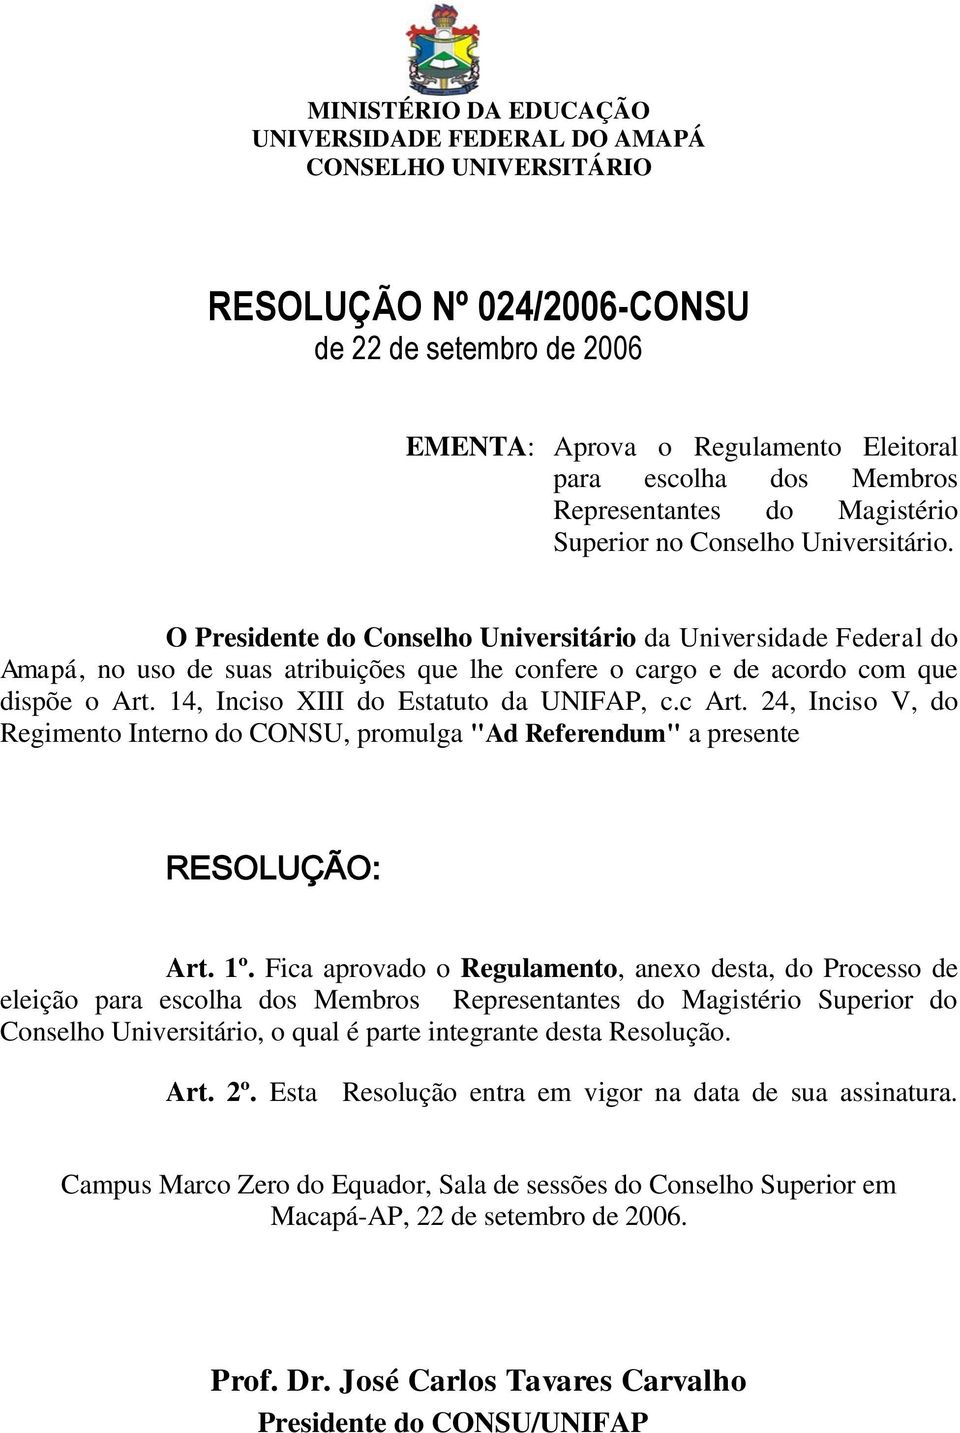 O Presidente do Conselho Universitário da Universidade Federal do Amapá, no uso de suas atribuições que lhe confere o cargo e de acordo com que dispõe o Art. 14, Inciso XIII do Estatuto da UNIFAP, c.